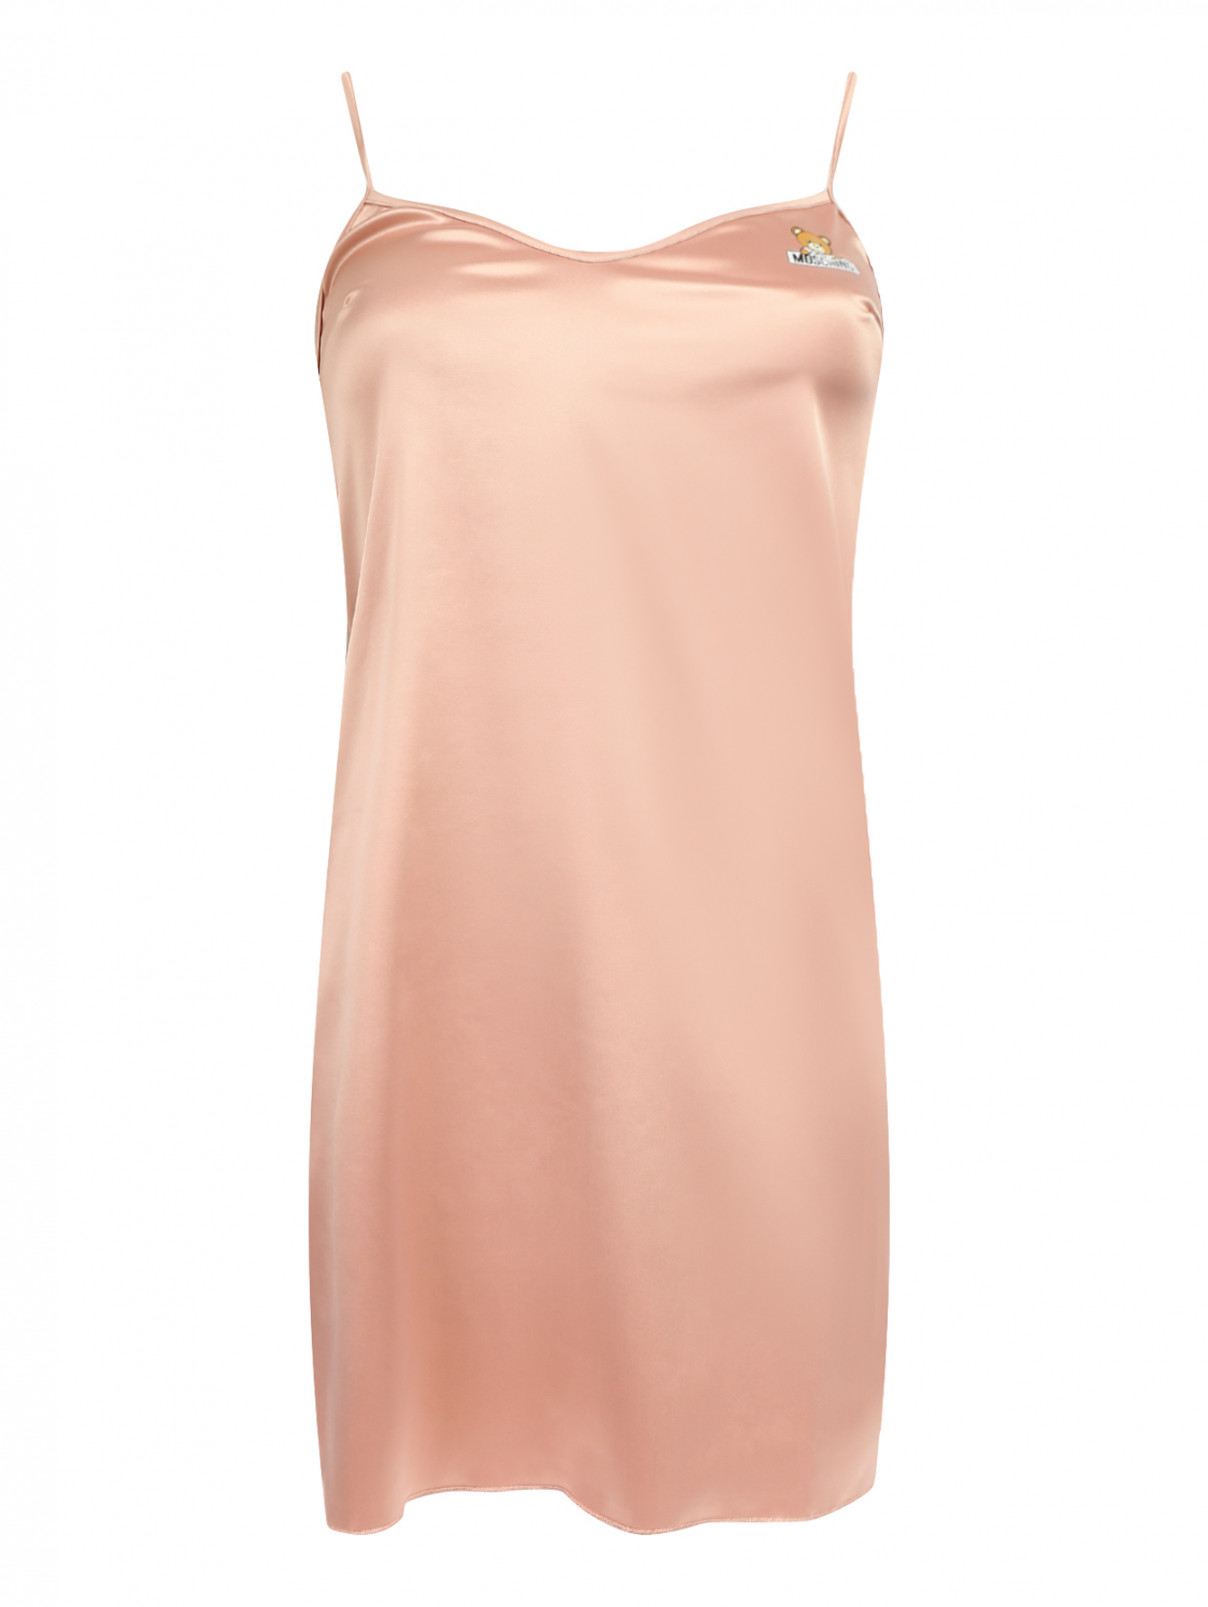 Комбинация на бретелях Moschino Underwear  –  Общий вид  – Цвет:  Розовый